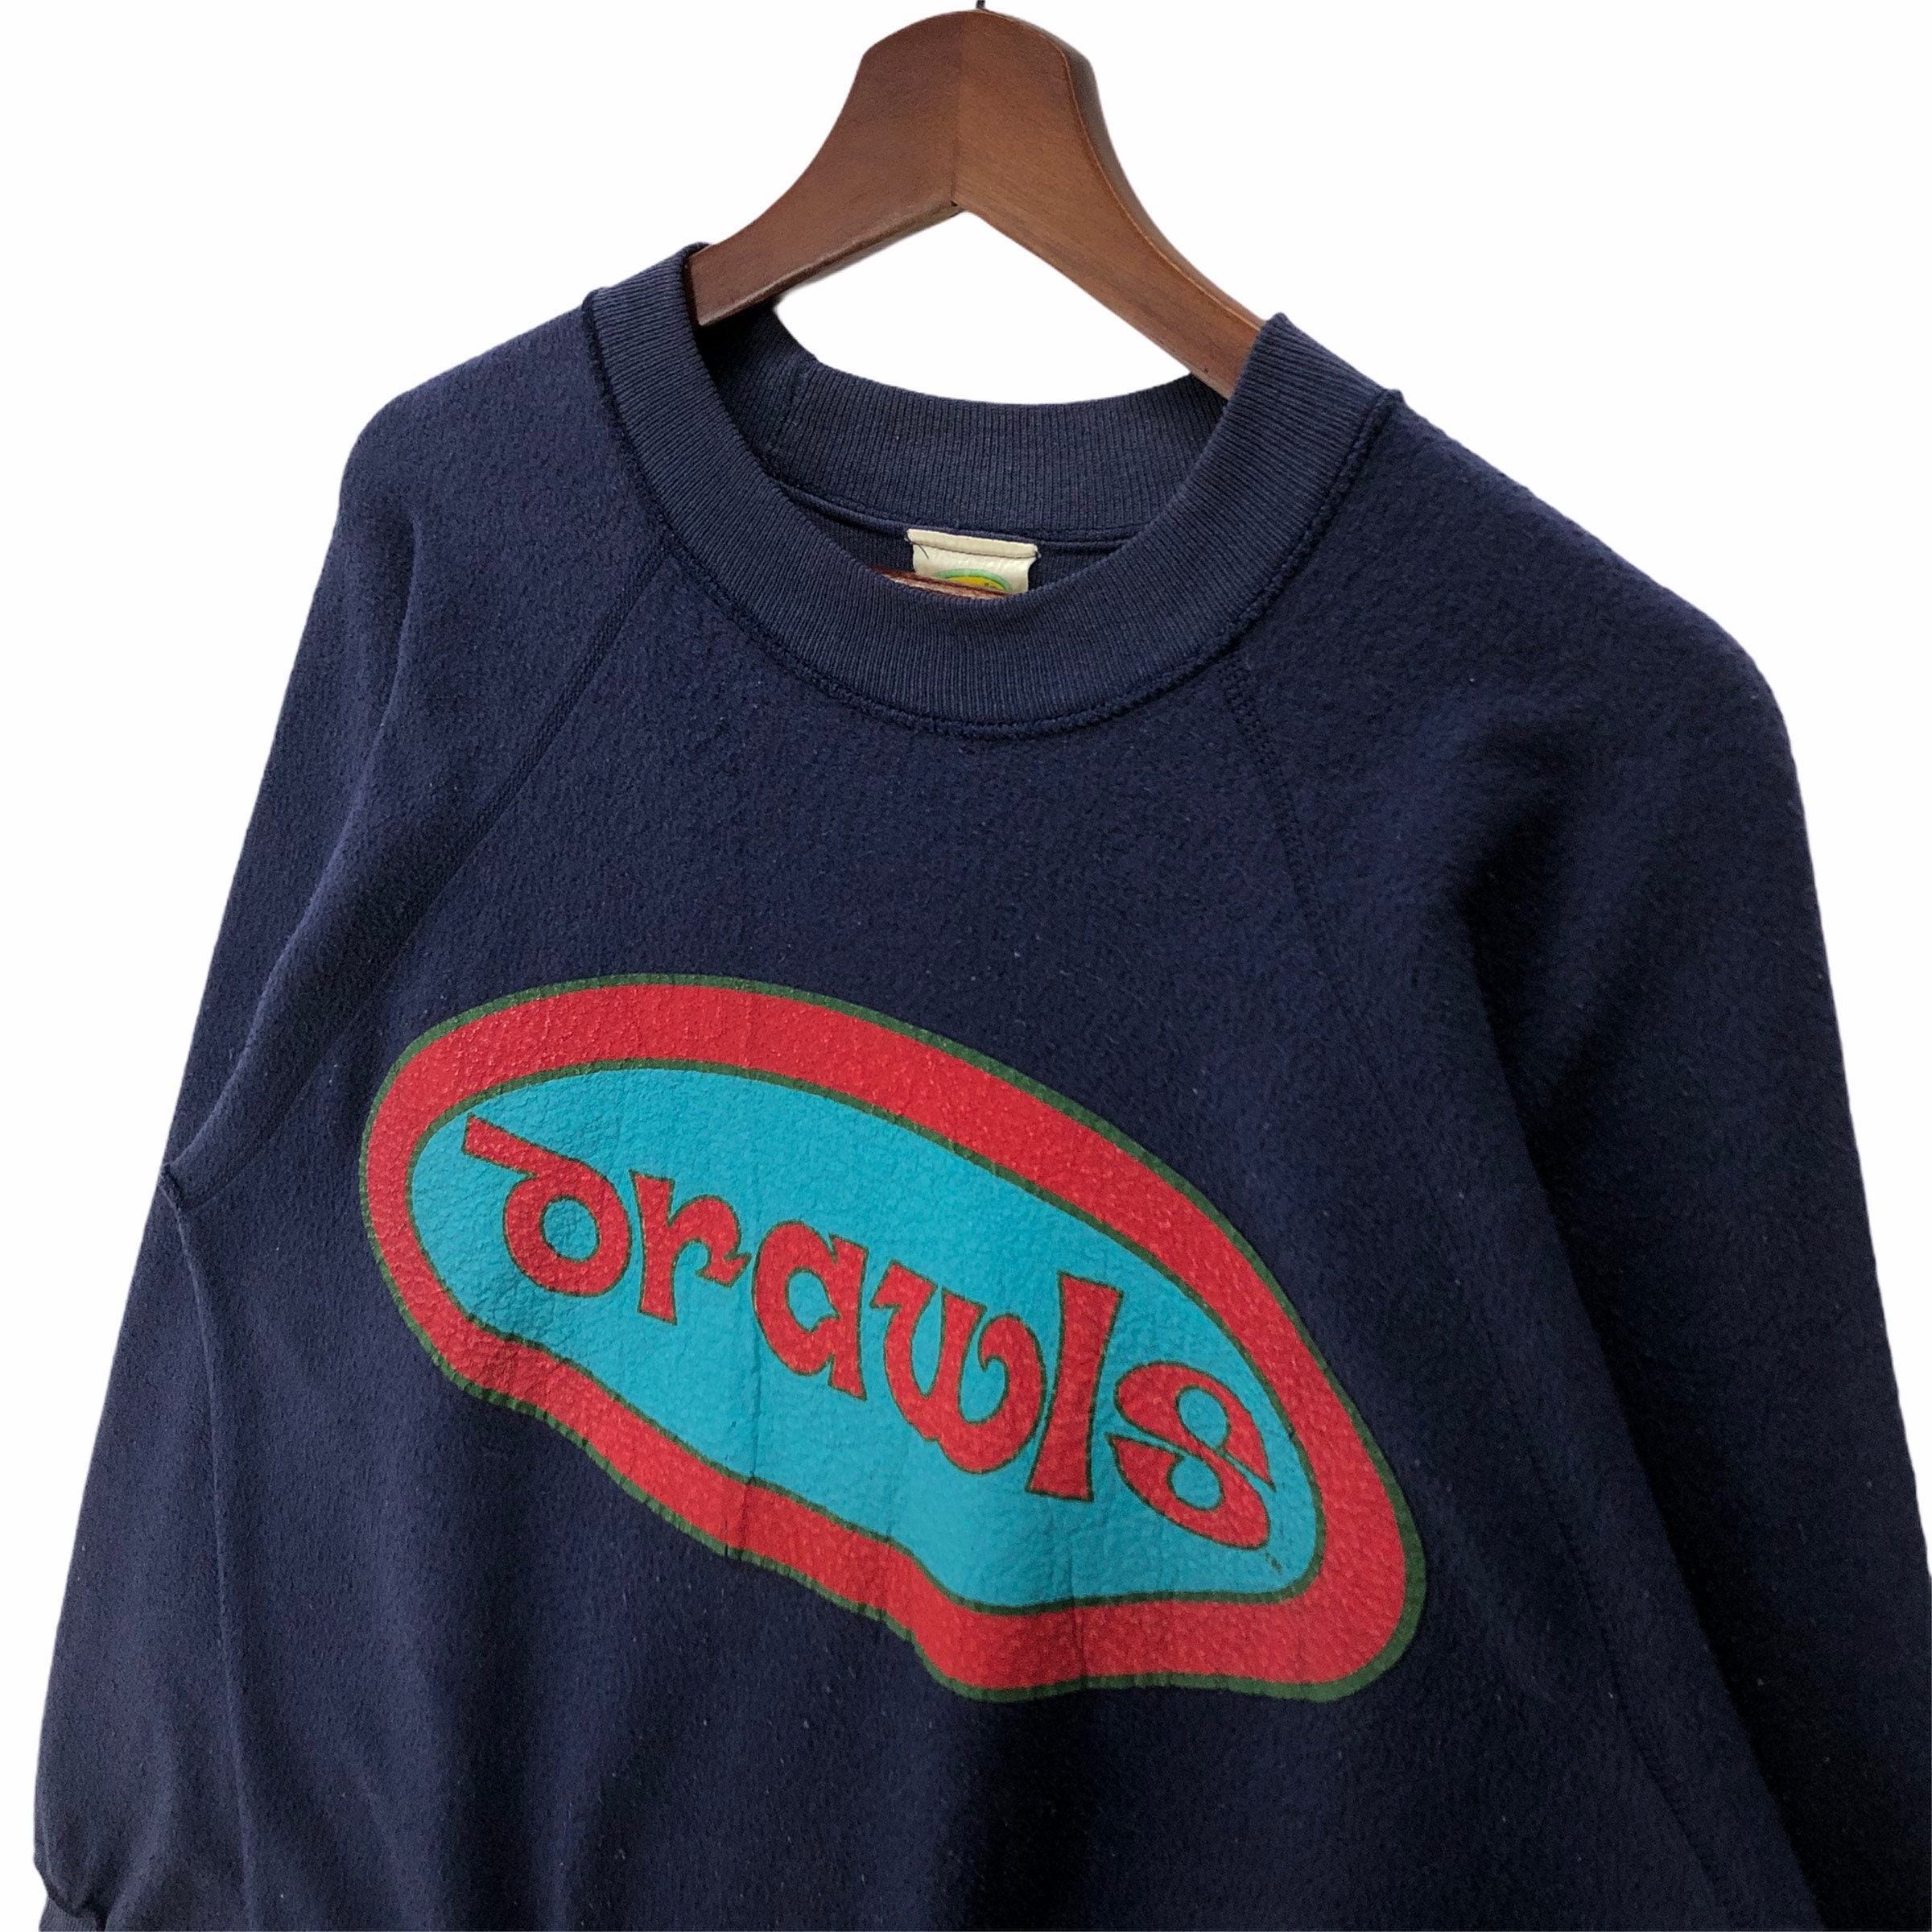 Vintage 90s Drawls Sweatshirt Vintage American Streetwear - Etsy